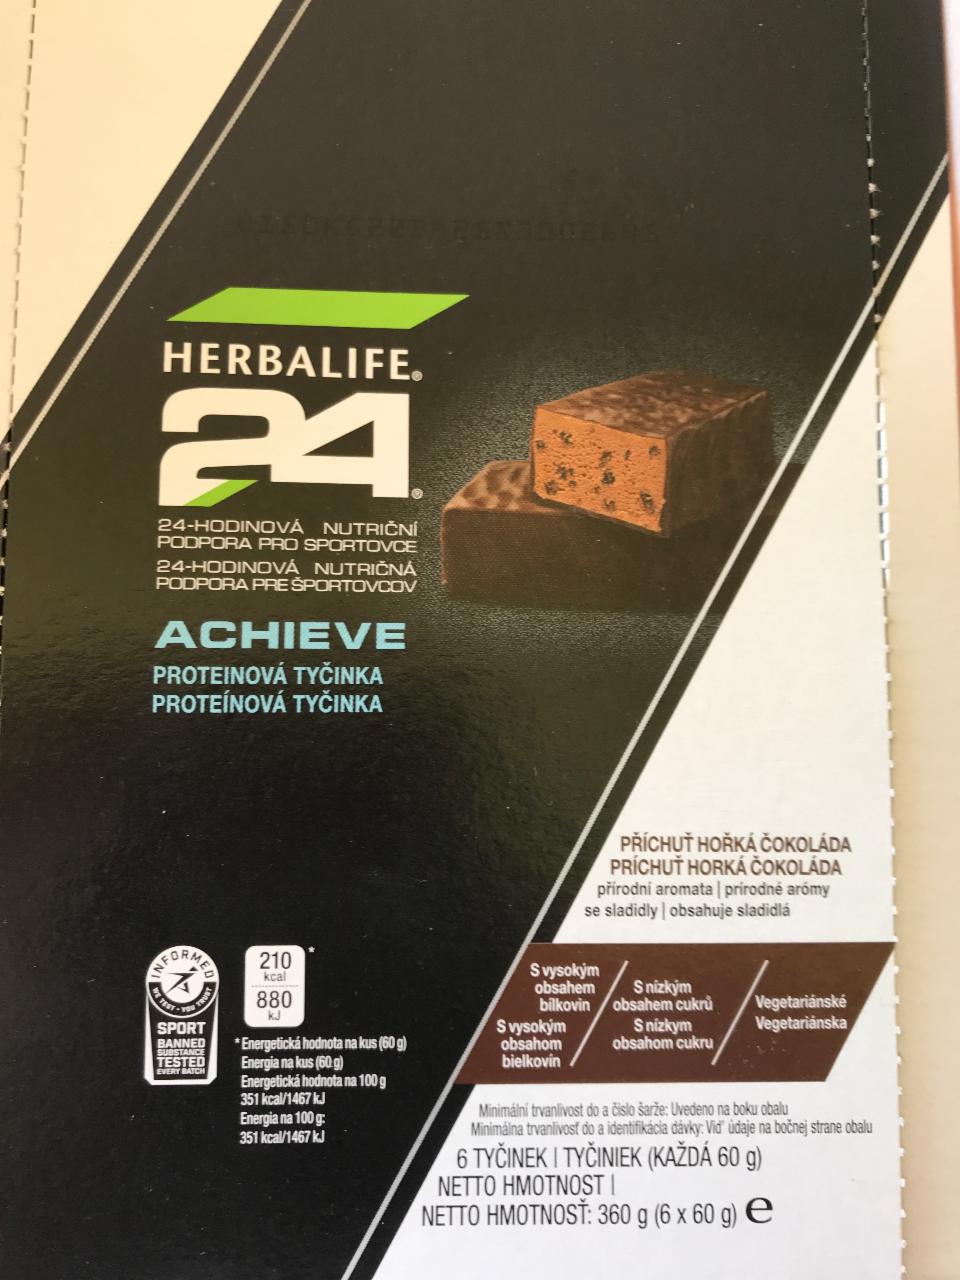 Fotografie - Achieve proteinová tyčinka příchuť hořká čokoláda 24 Herbalife